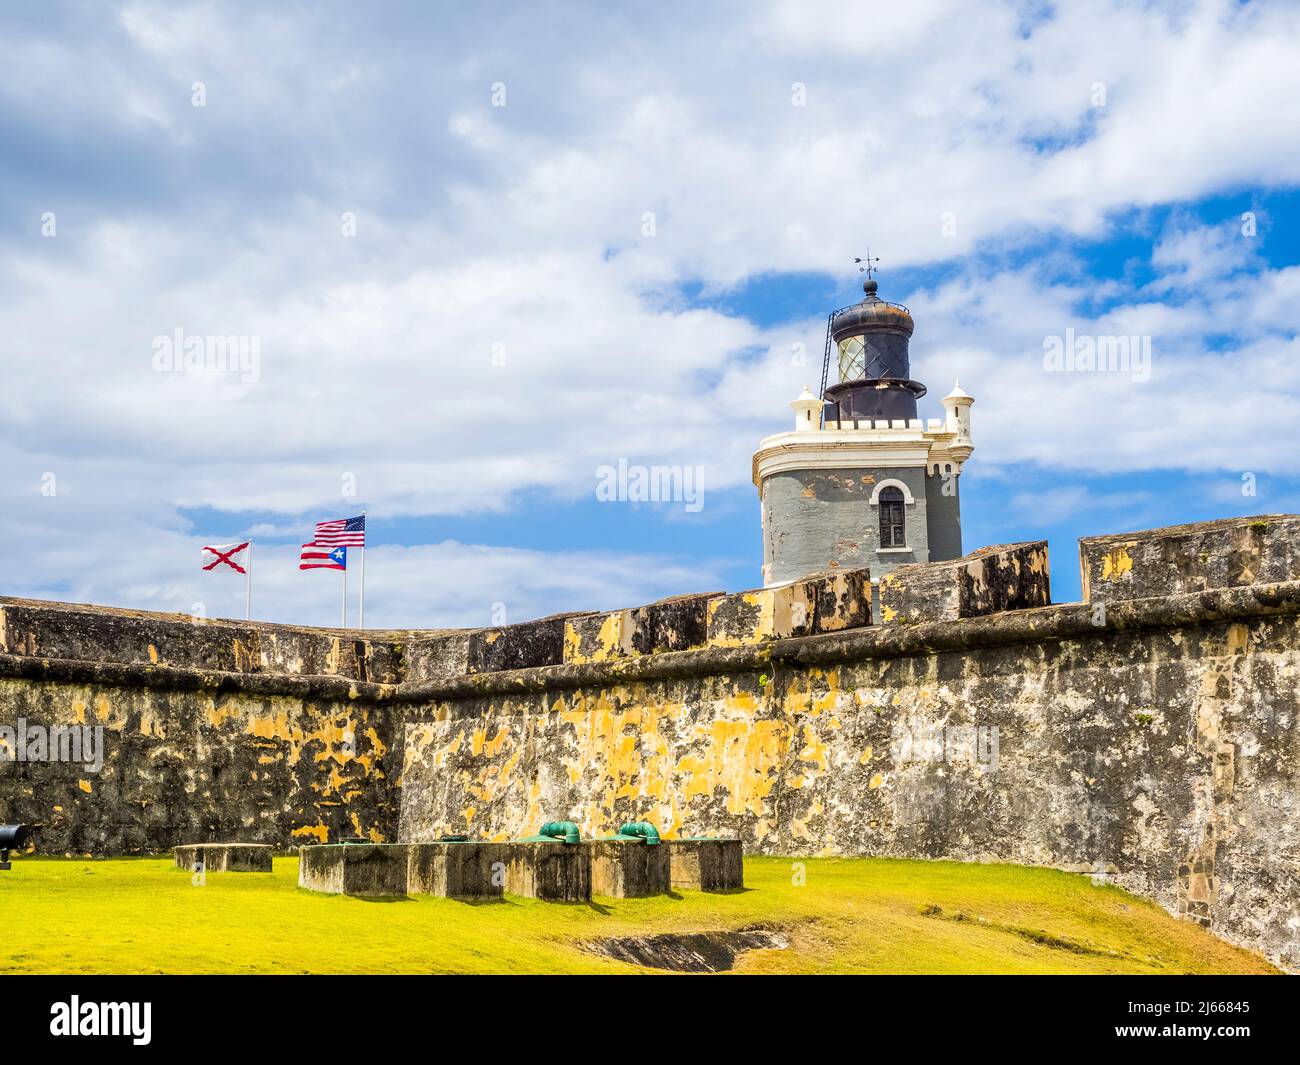 Castillo San Juan de Morro eine Festung aus dem 16. Jahrhundert eine nationale historische Stätte von San Juan im alten San Juan in Puerto Rico Stockfoto